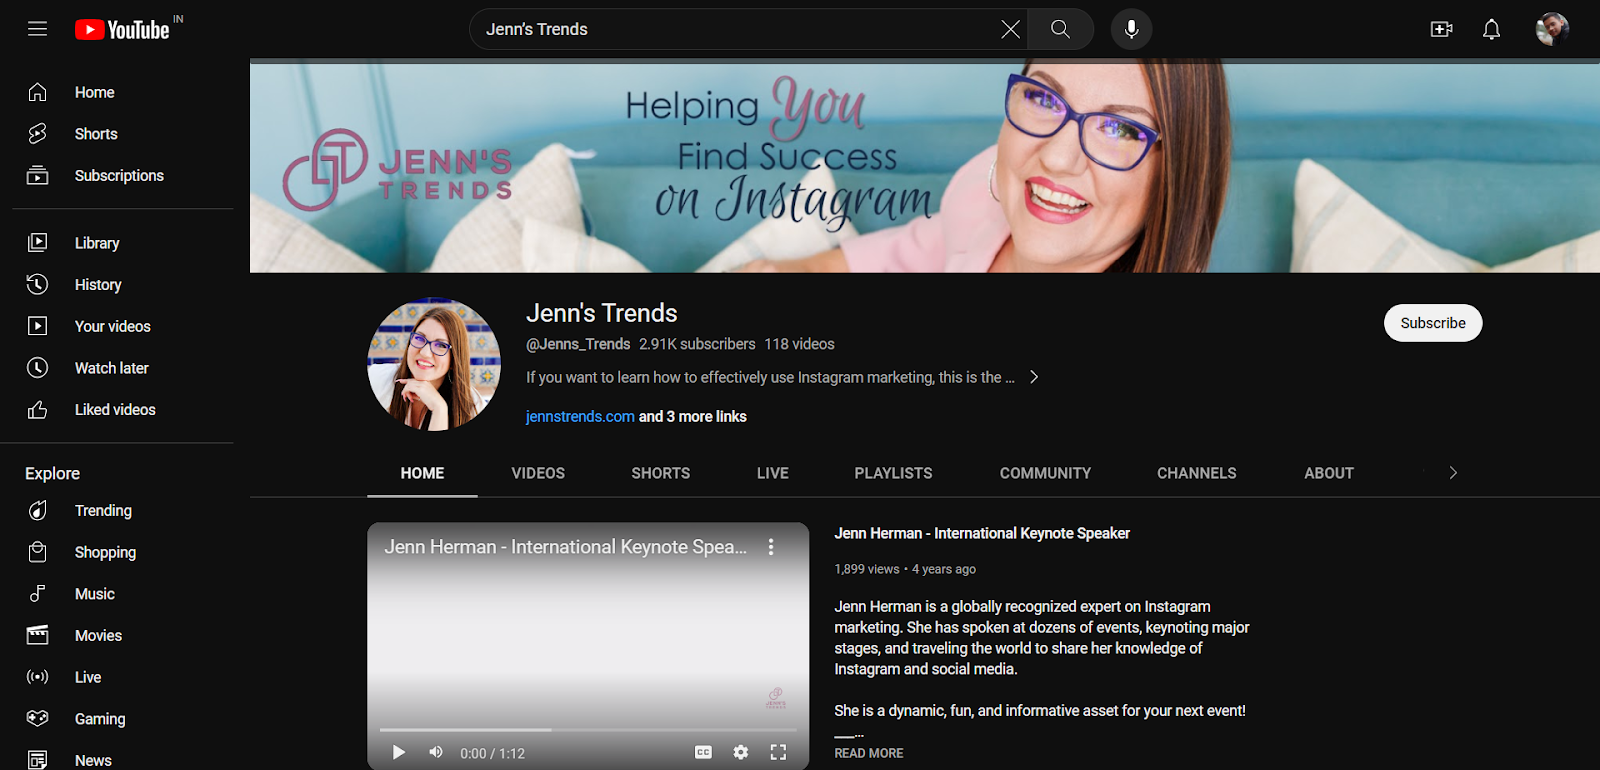 Jenn’s Trends' YouTube channel